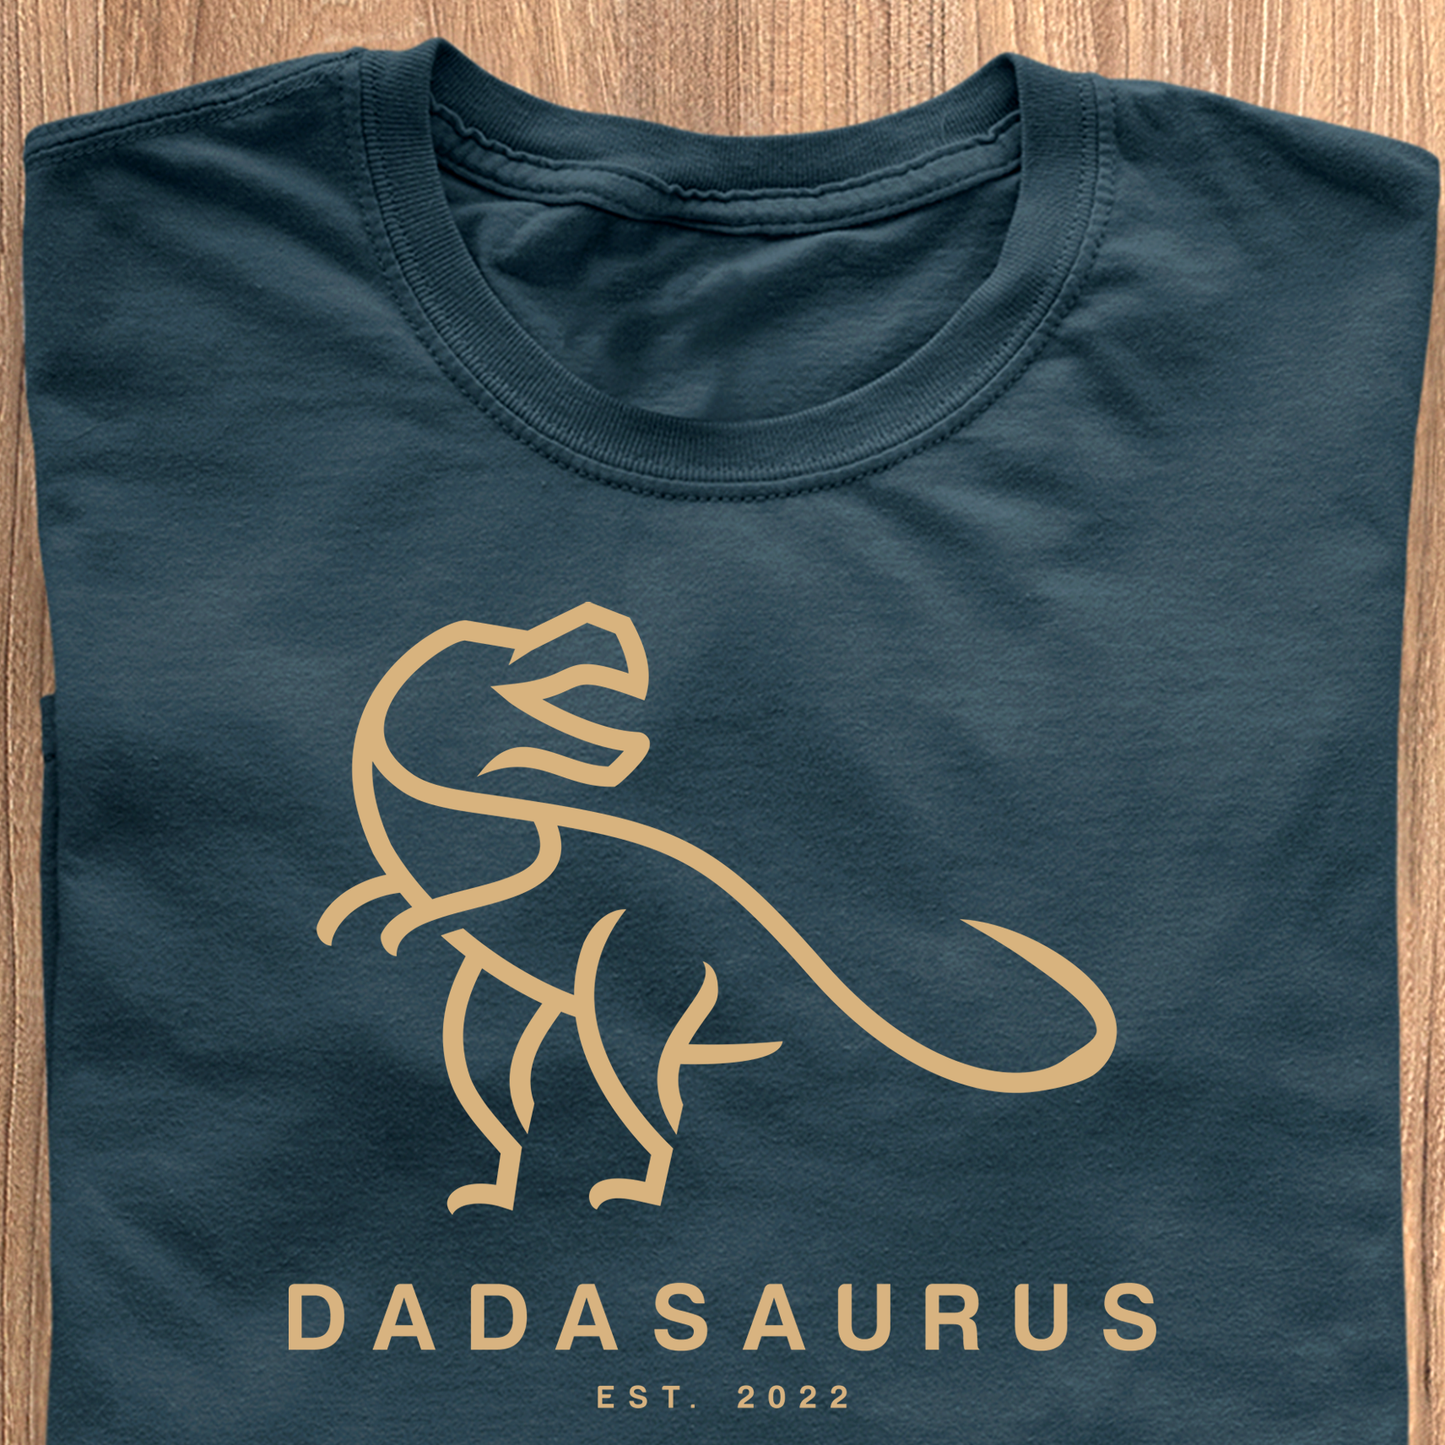 Dadasaurus T-Shirt - kan personliggøres